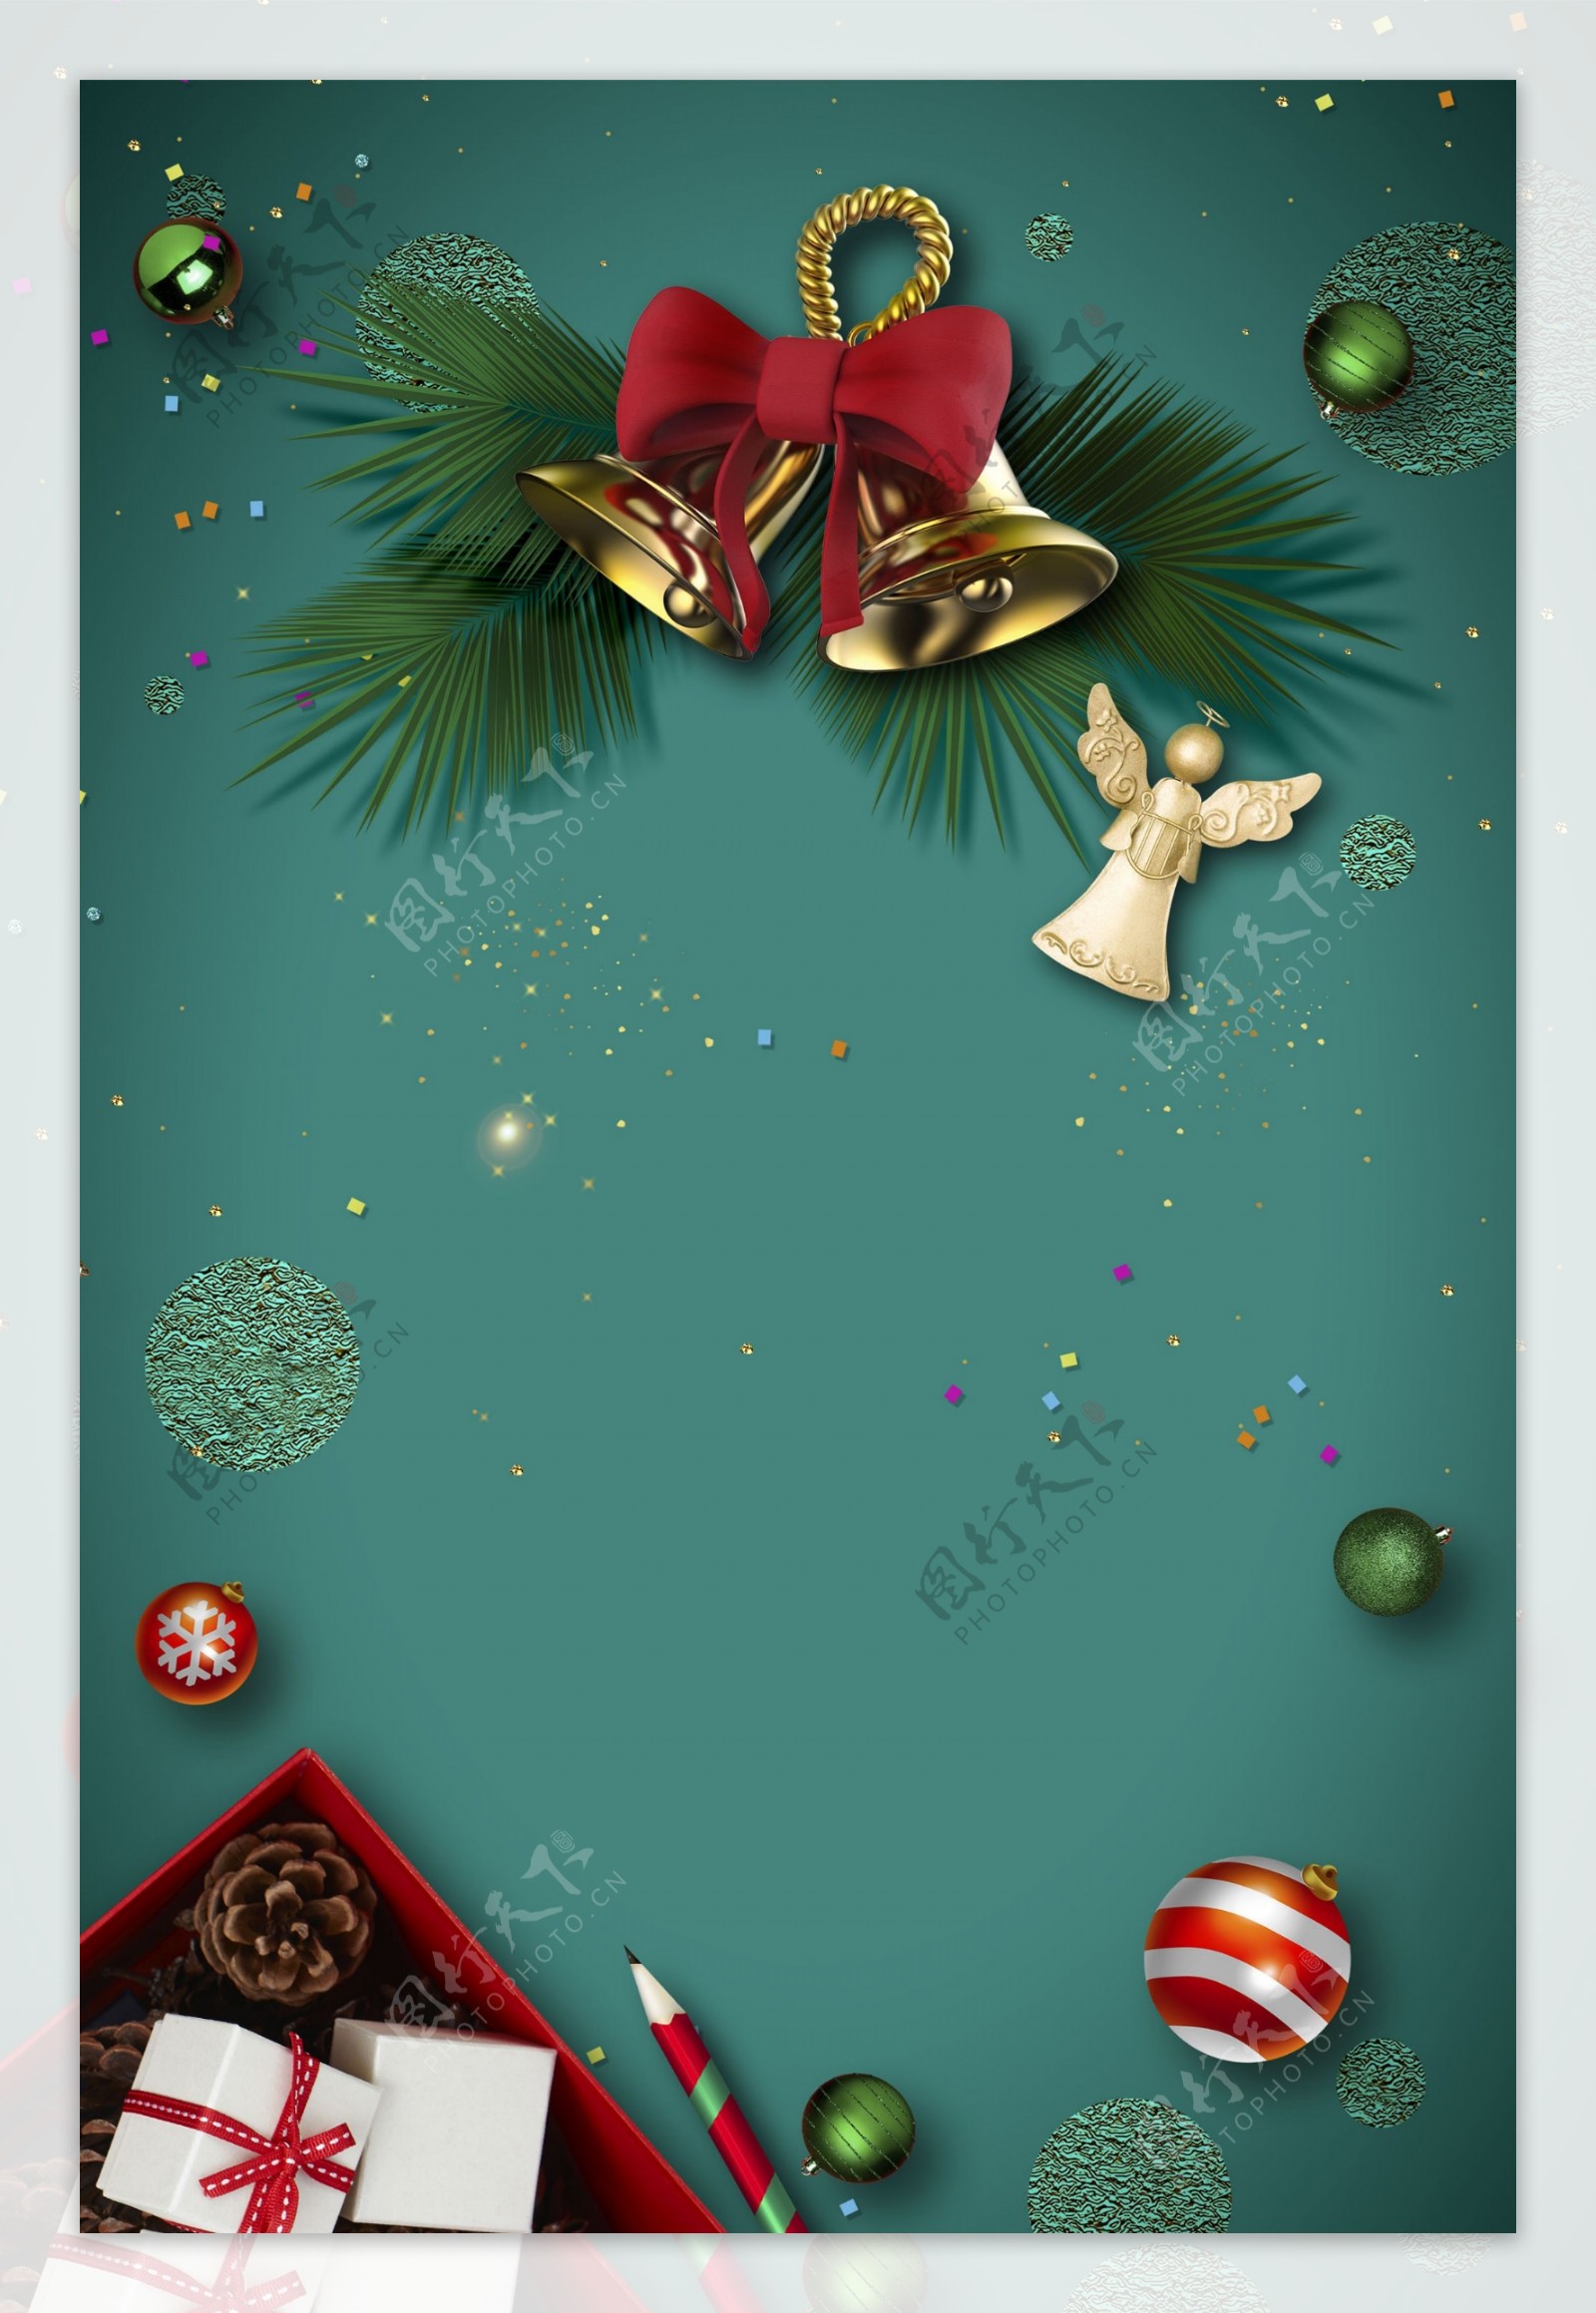 圣诞节铃铛松果装饰背景设计